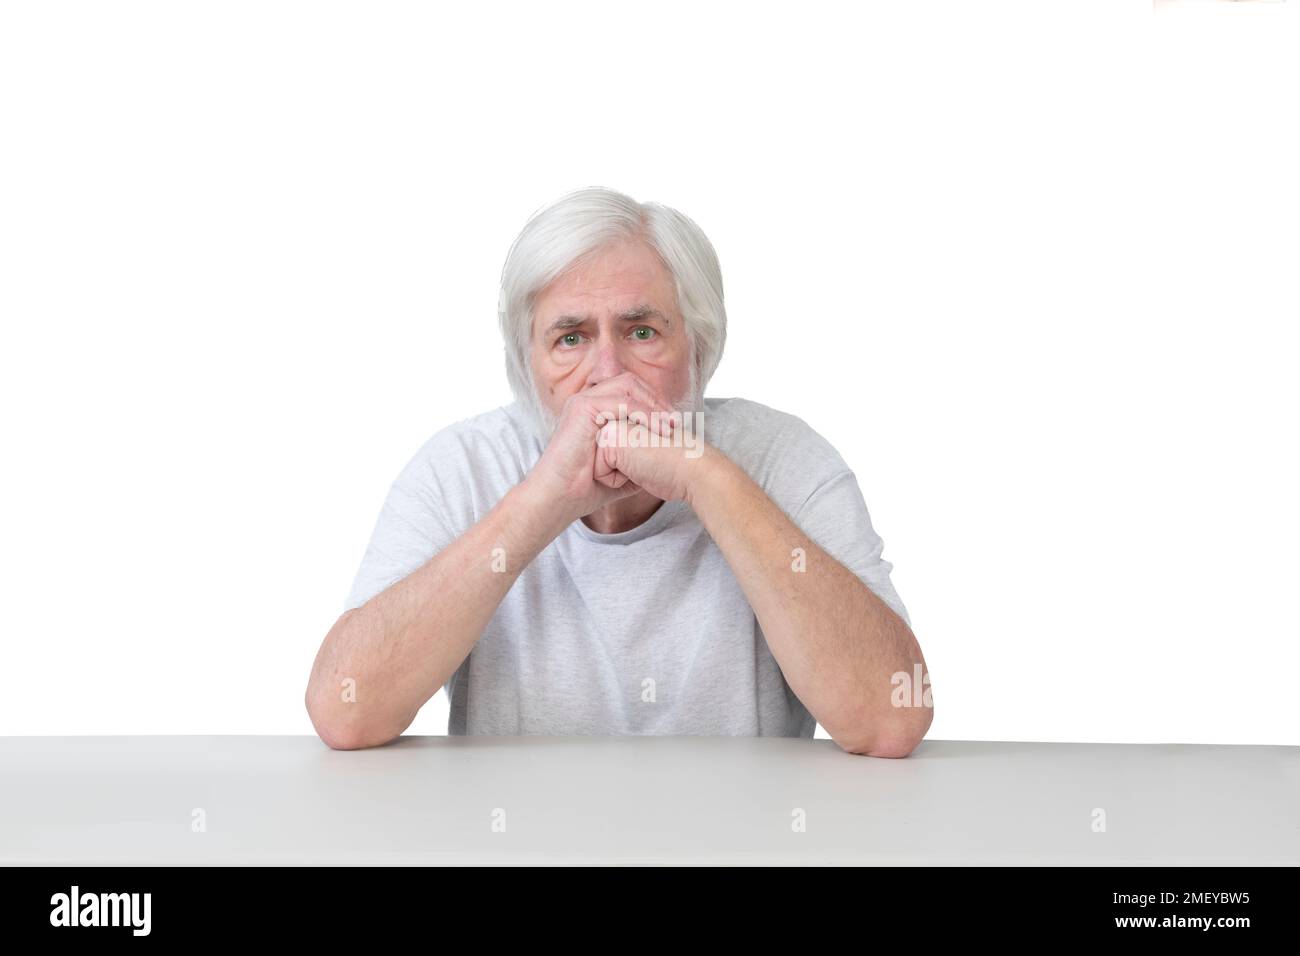 Horizontale Aufnahme eines besorgten, weißhaarigen alten Mannes, der mit seinen Ellbogen auf dem Tisch sitzt. Weißer Hintergrund. Viel Platz zum Kopieren. Stockfoto